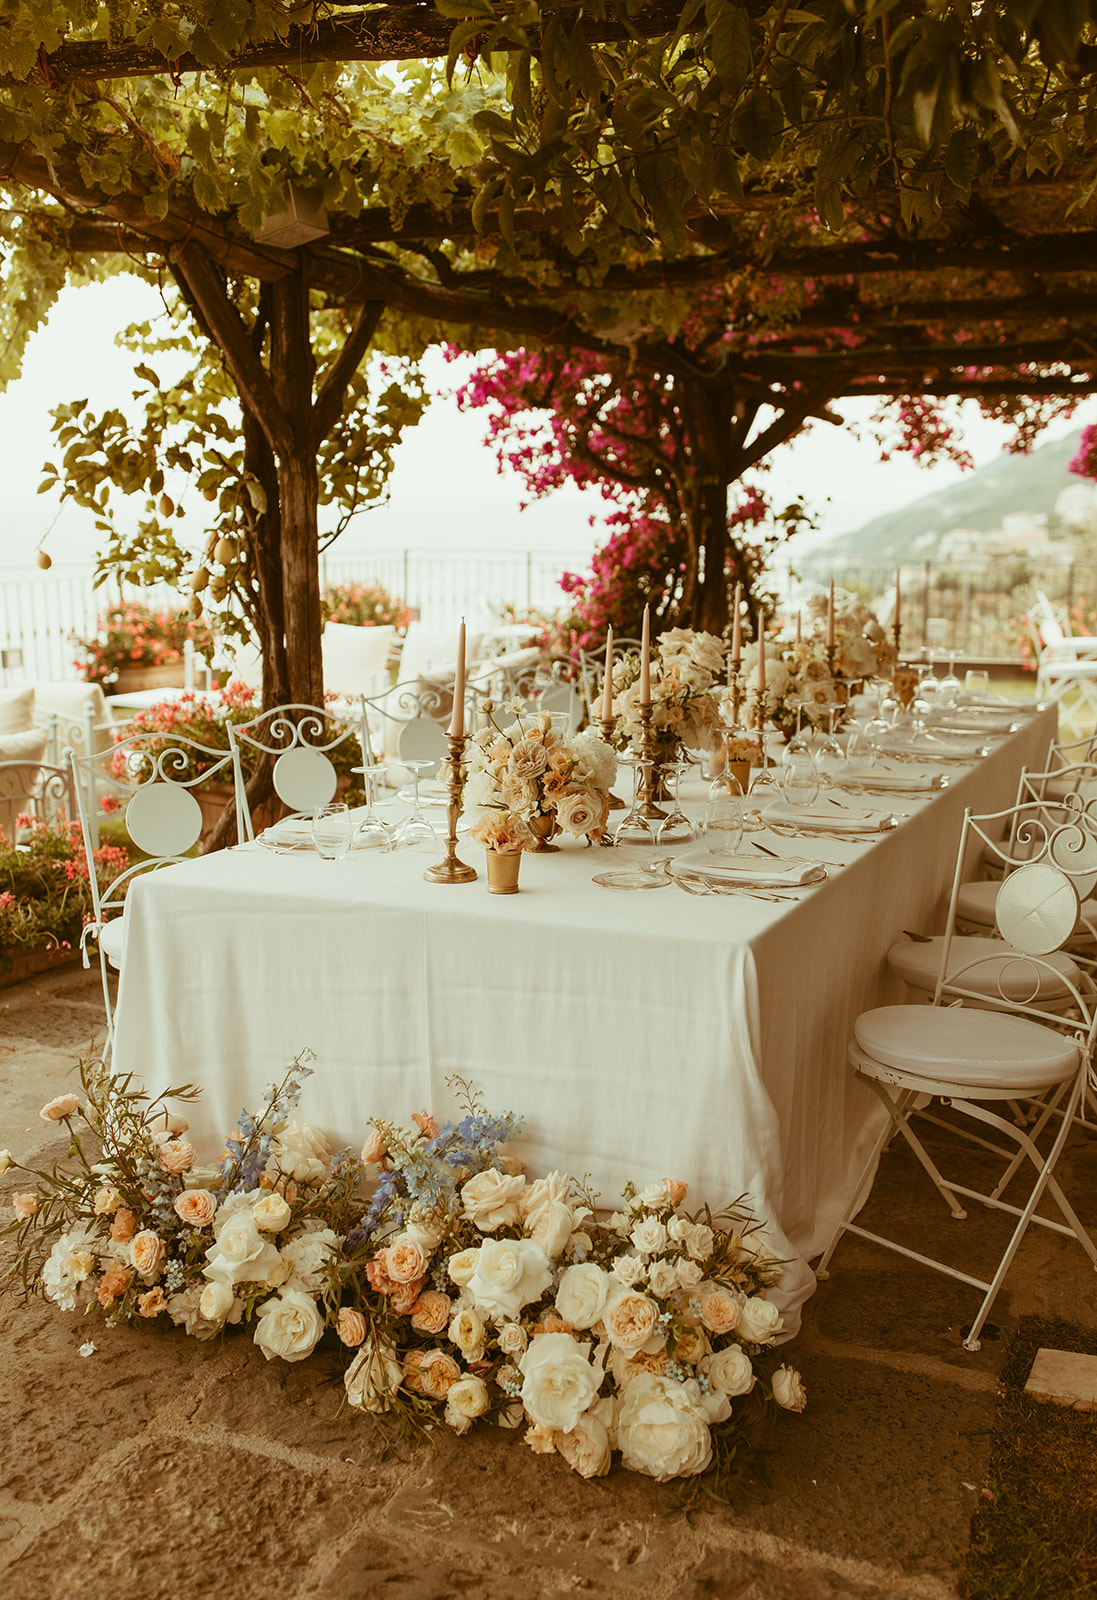 Allestimento floreale per tavolo lungo con candele e fiori bianchi, rosa e celesti